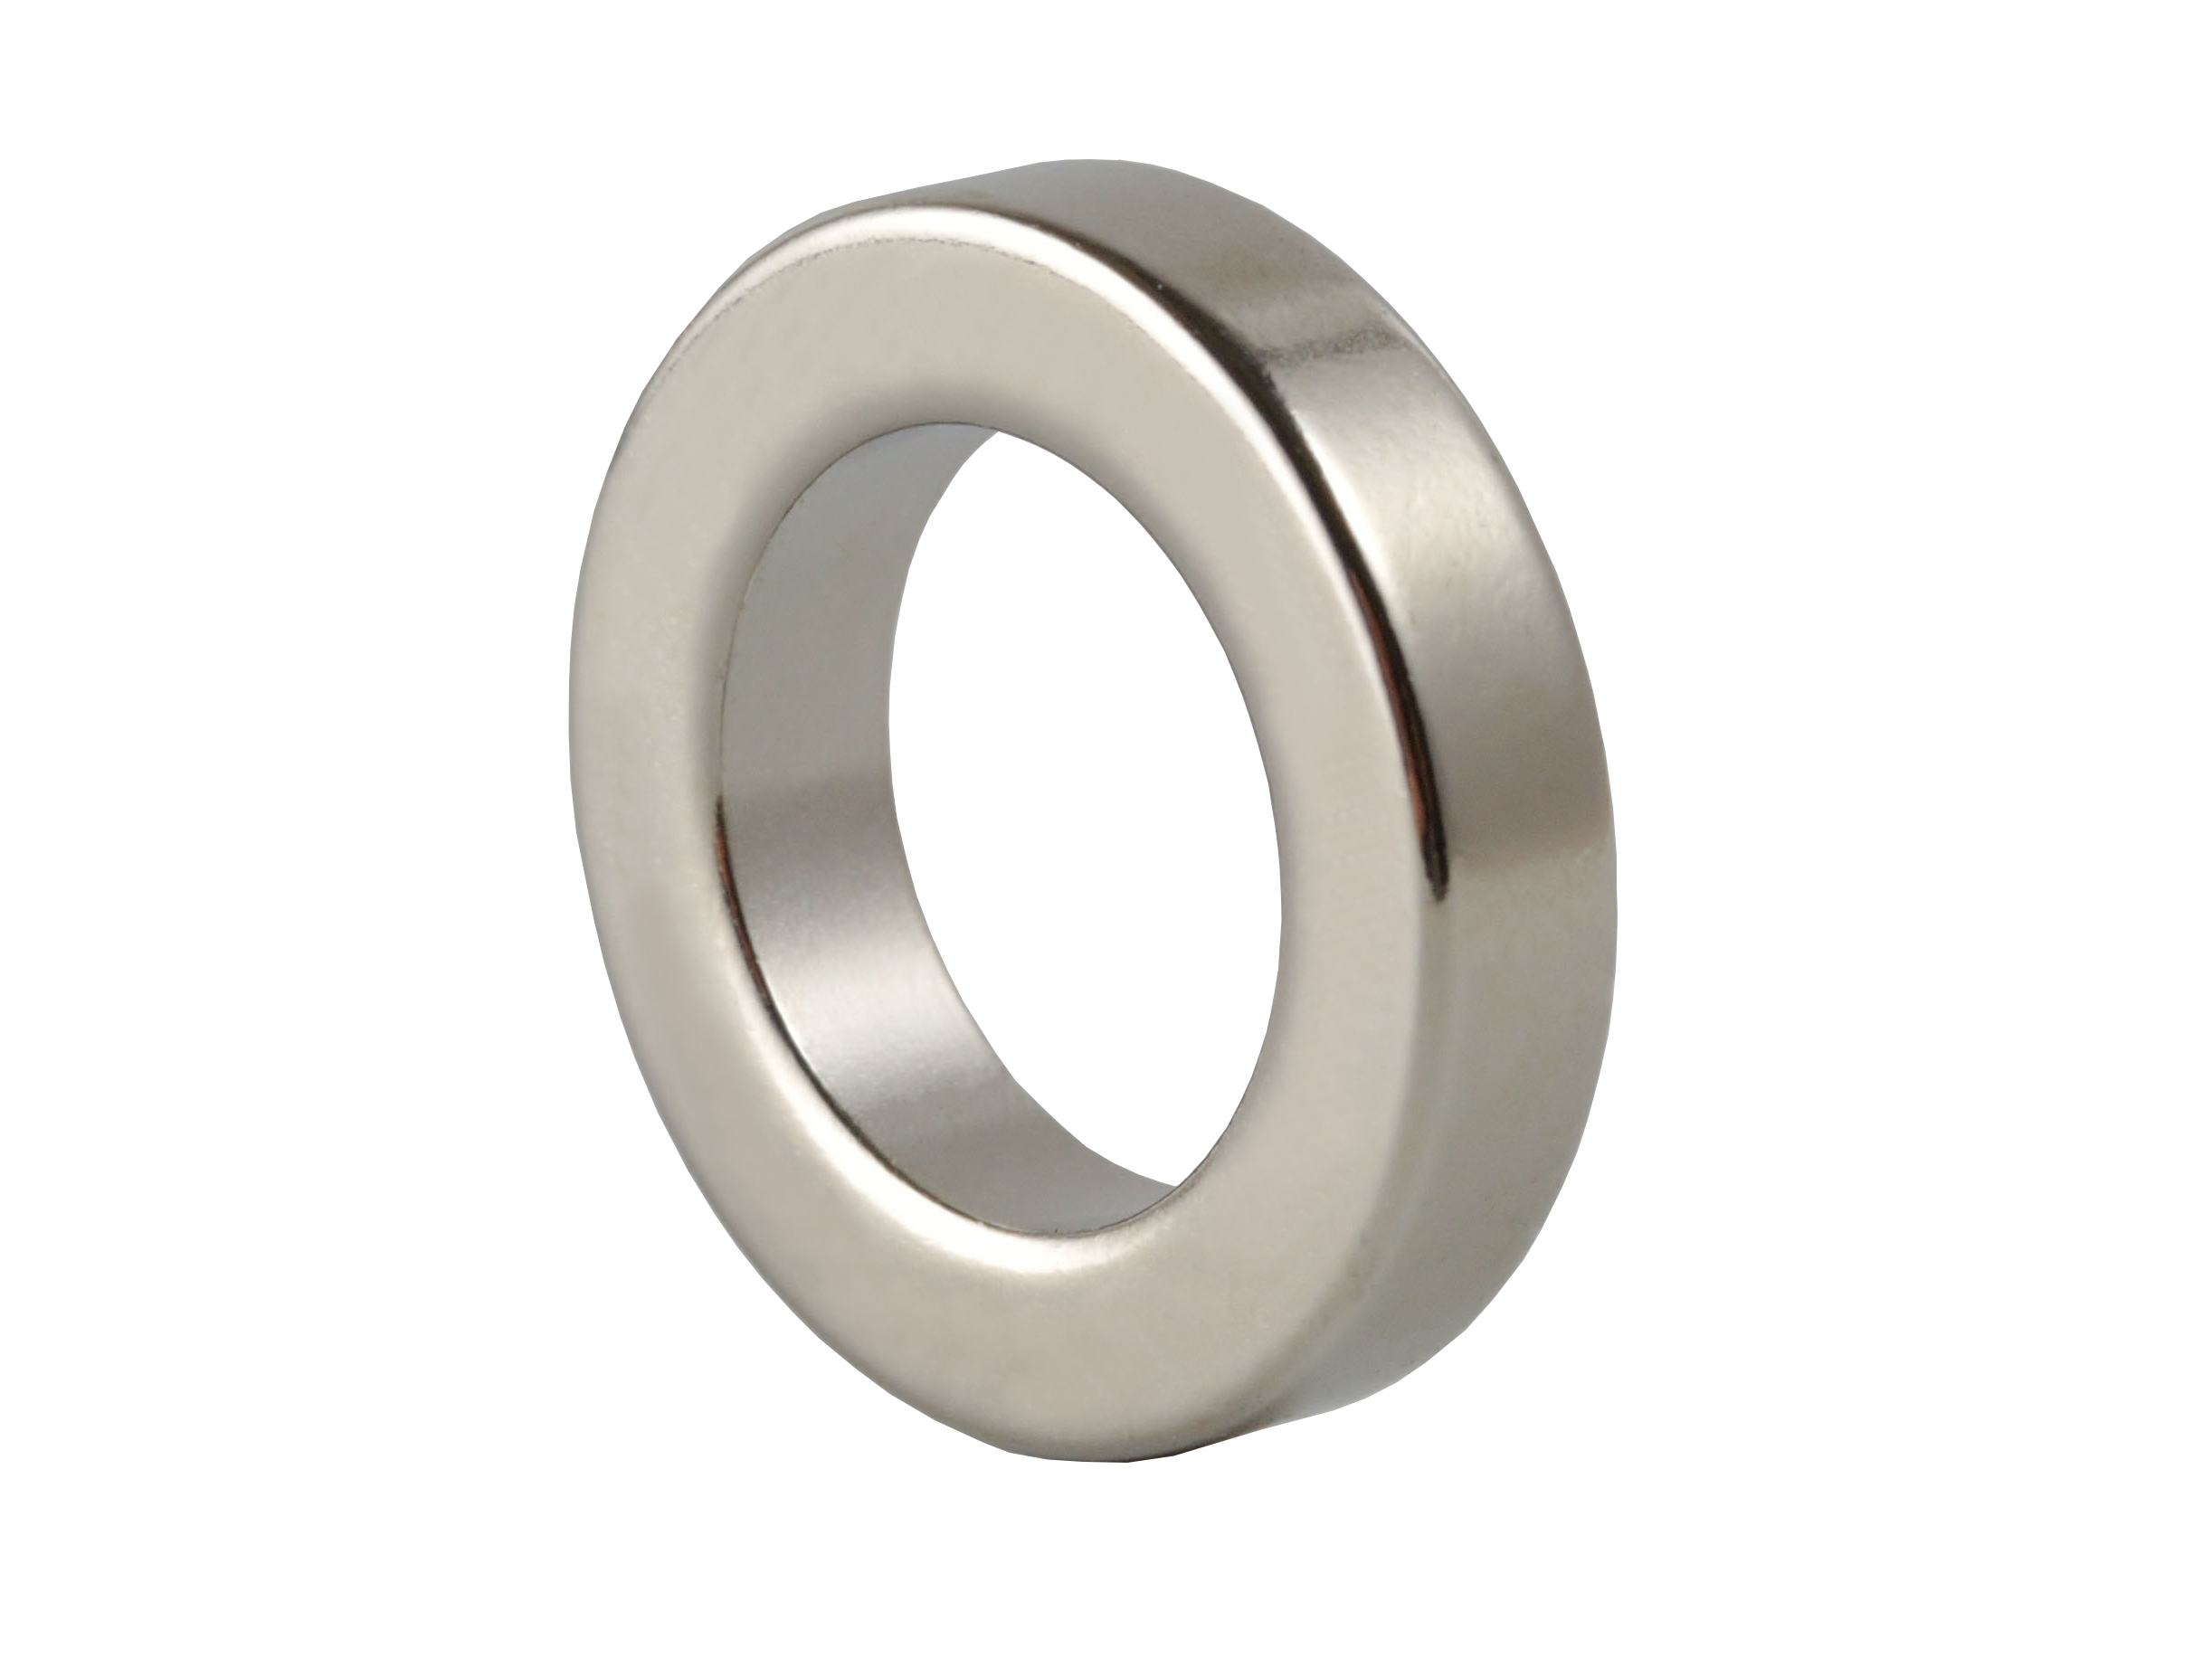 Ring‑Shaped Neodymium Magnet NOR266